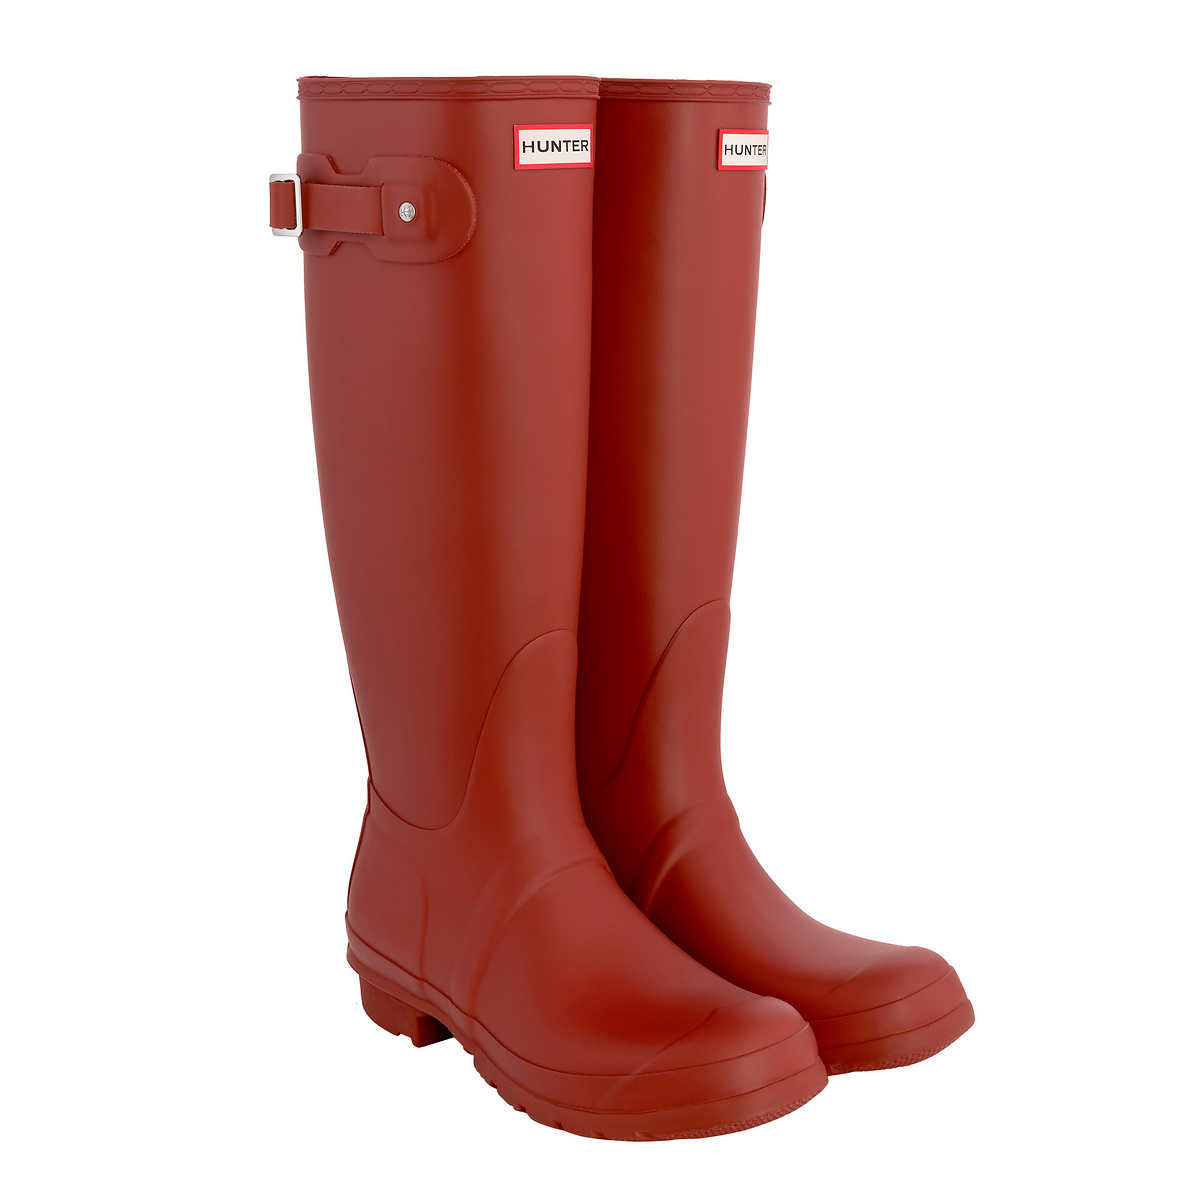 hunter-bottes-hautes-caoutchouc-original-pour-femme-women-boots-rouge-military-red